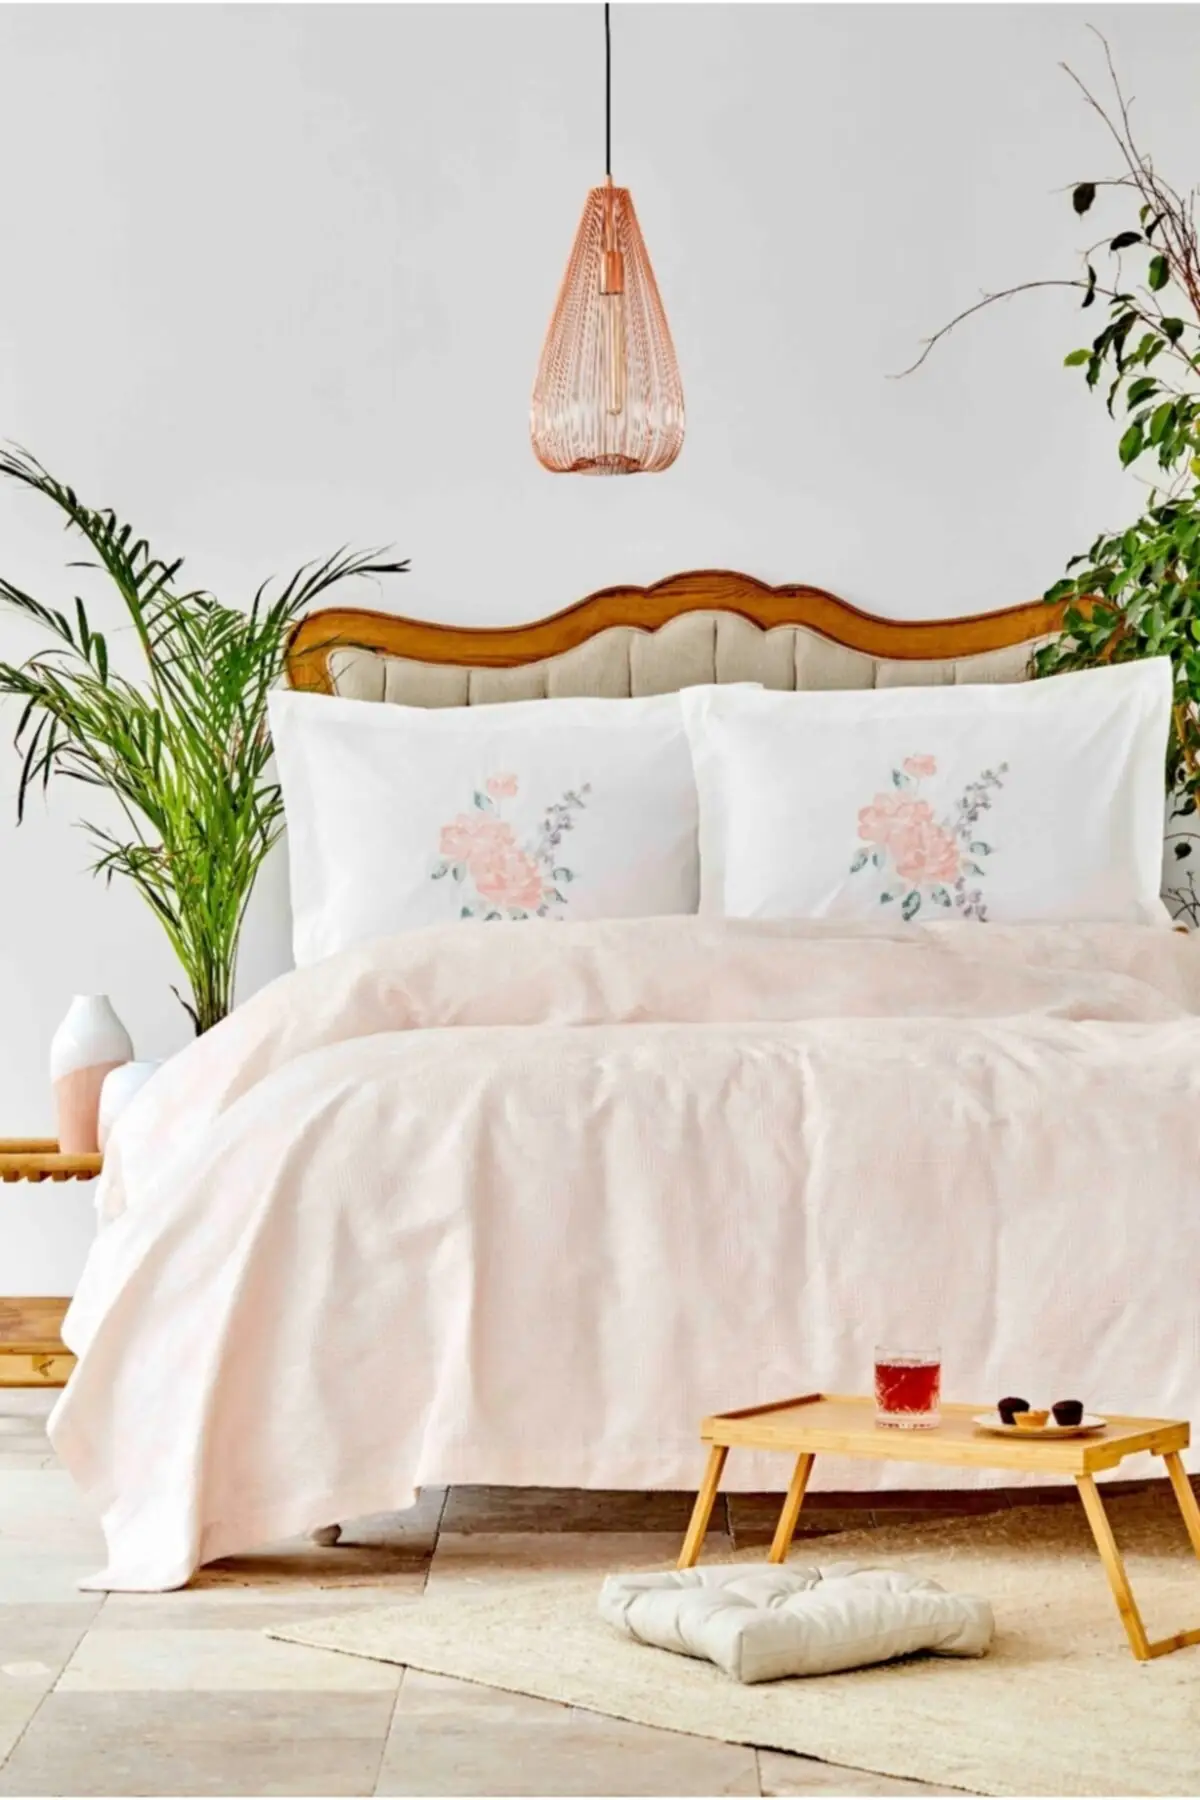 

Двусторонняя хлопковая снасть на щуку, Lena, хлопок 240x260, бескамерная розовая ткань из ткани пике и щуки для спальни, домашняя мебель